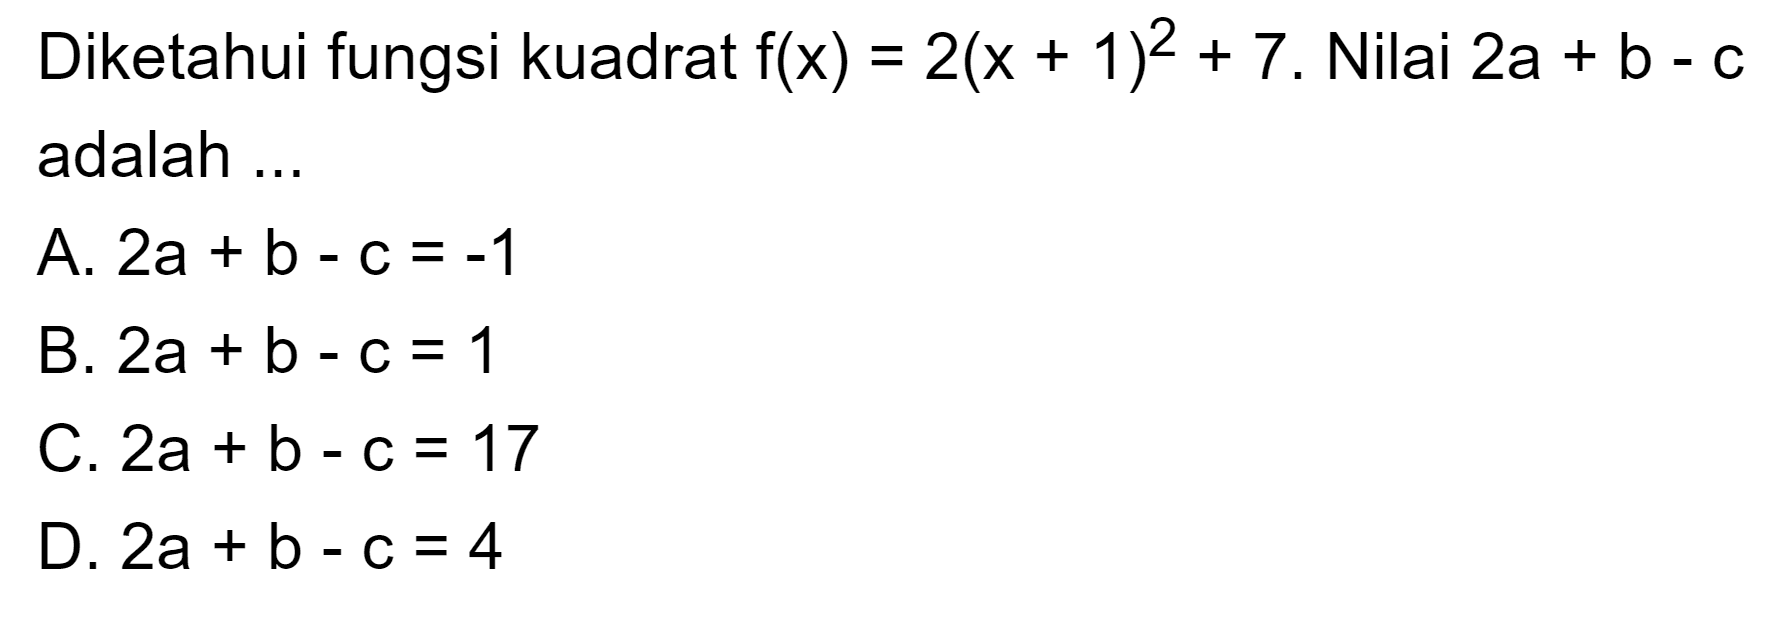 Diketahui fungsi kuadrat f(x) = 2(x + 1)^2 + 7. Nilai 2a + b - c adalah  ....